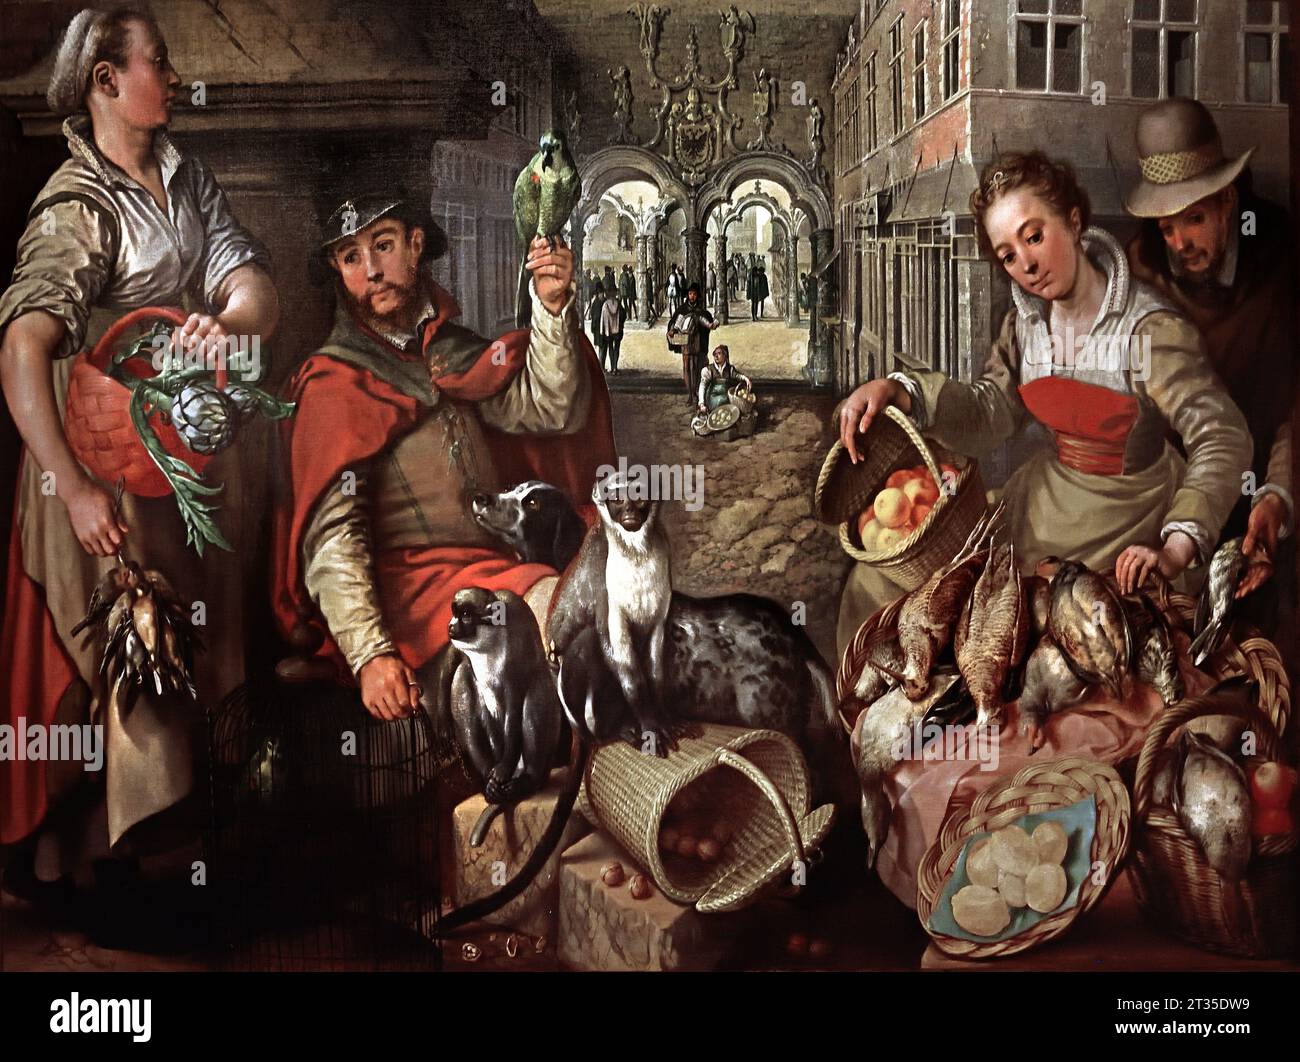 Verkäufer exotischer Tiere, 1566,16. Jahrhundert von Joachim Beuckelaer 1533–1574 Antwerpen Flämisch Belgien Belgien, Museum, Italien. Stockfoto